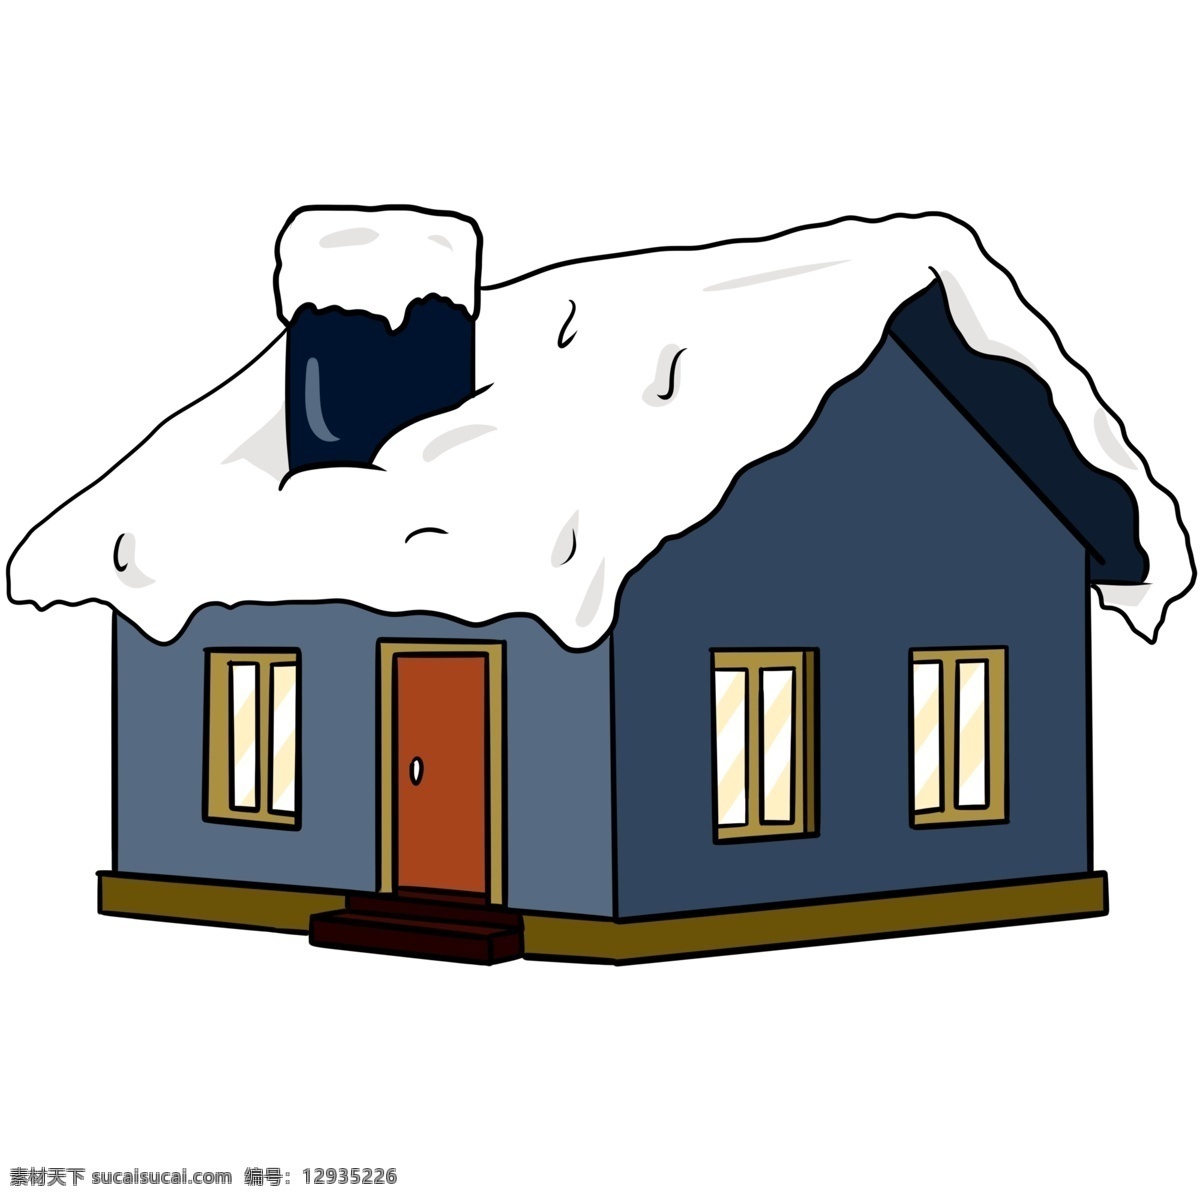 手绘 冬季 蓝色 房子 插画 手绘冬季插画 创意冬季插画 寒冷的冬季 萧条的冬季 寒冷的腊月 蓝色的房子